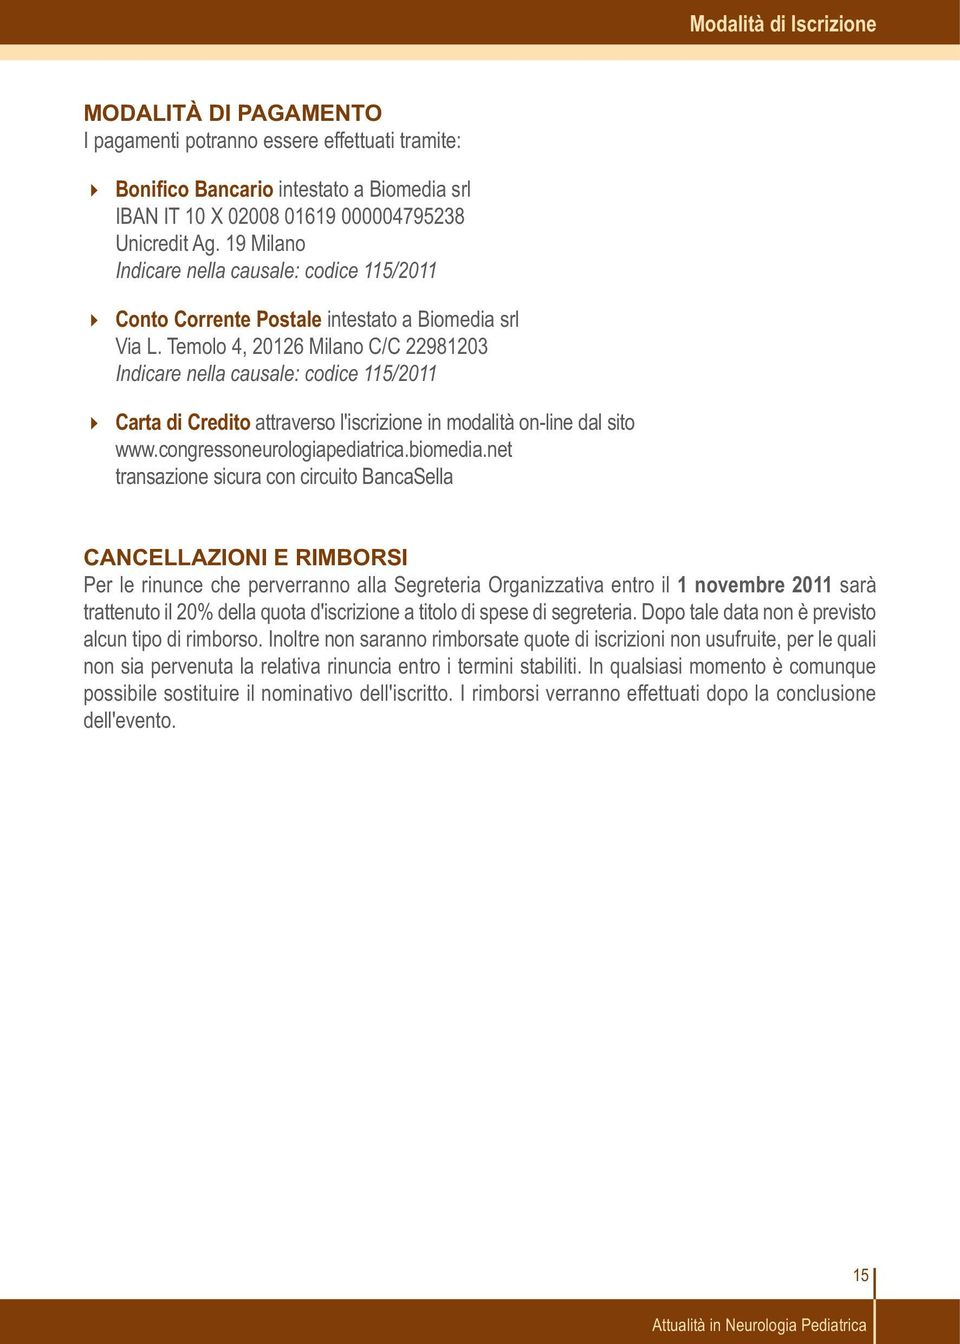 Temolo 4, 20126 Milano C/C 22981203 Indicare nella causale: codice 115/2011 Carta di Credito attraverso l'iscrizione in modalità on-line dal sito www.congressoneurologiapediatrica.biomedia.